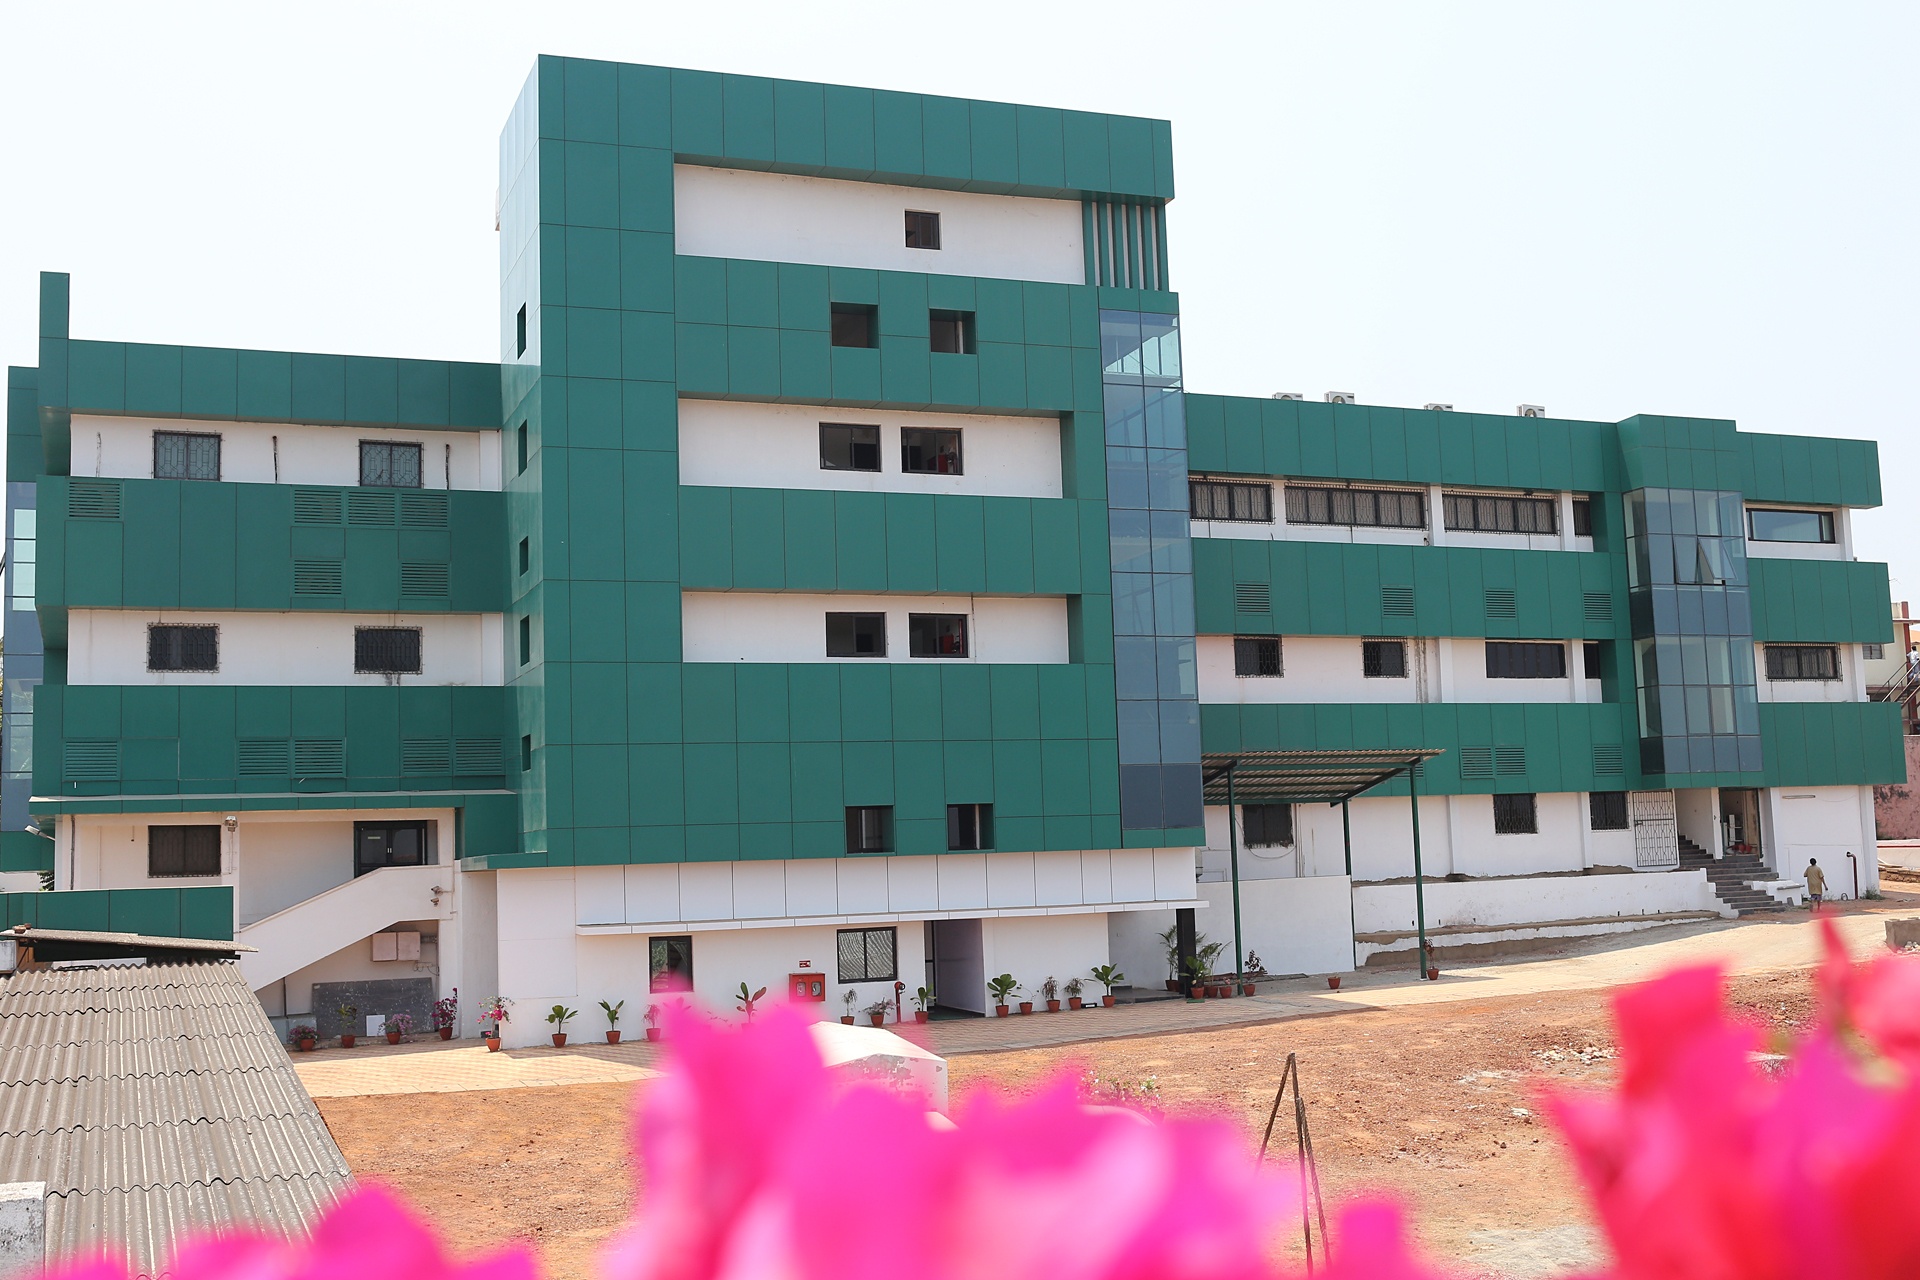 Zephyr Biomedicals factory at Verna, Goa